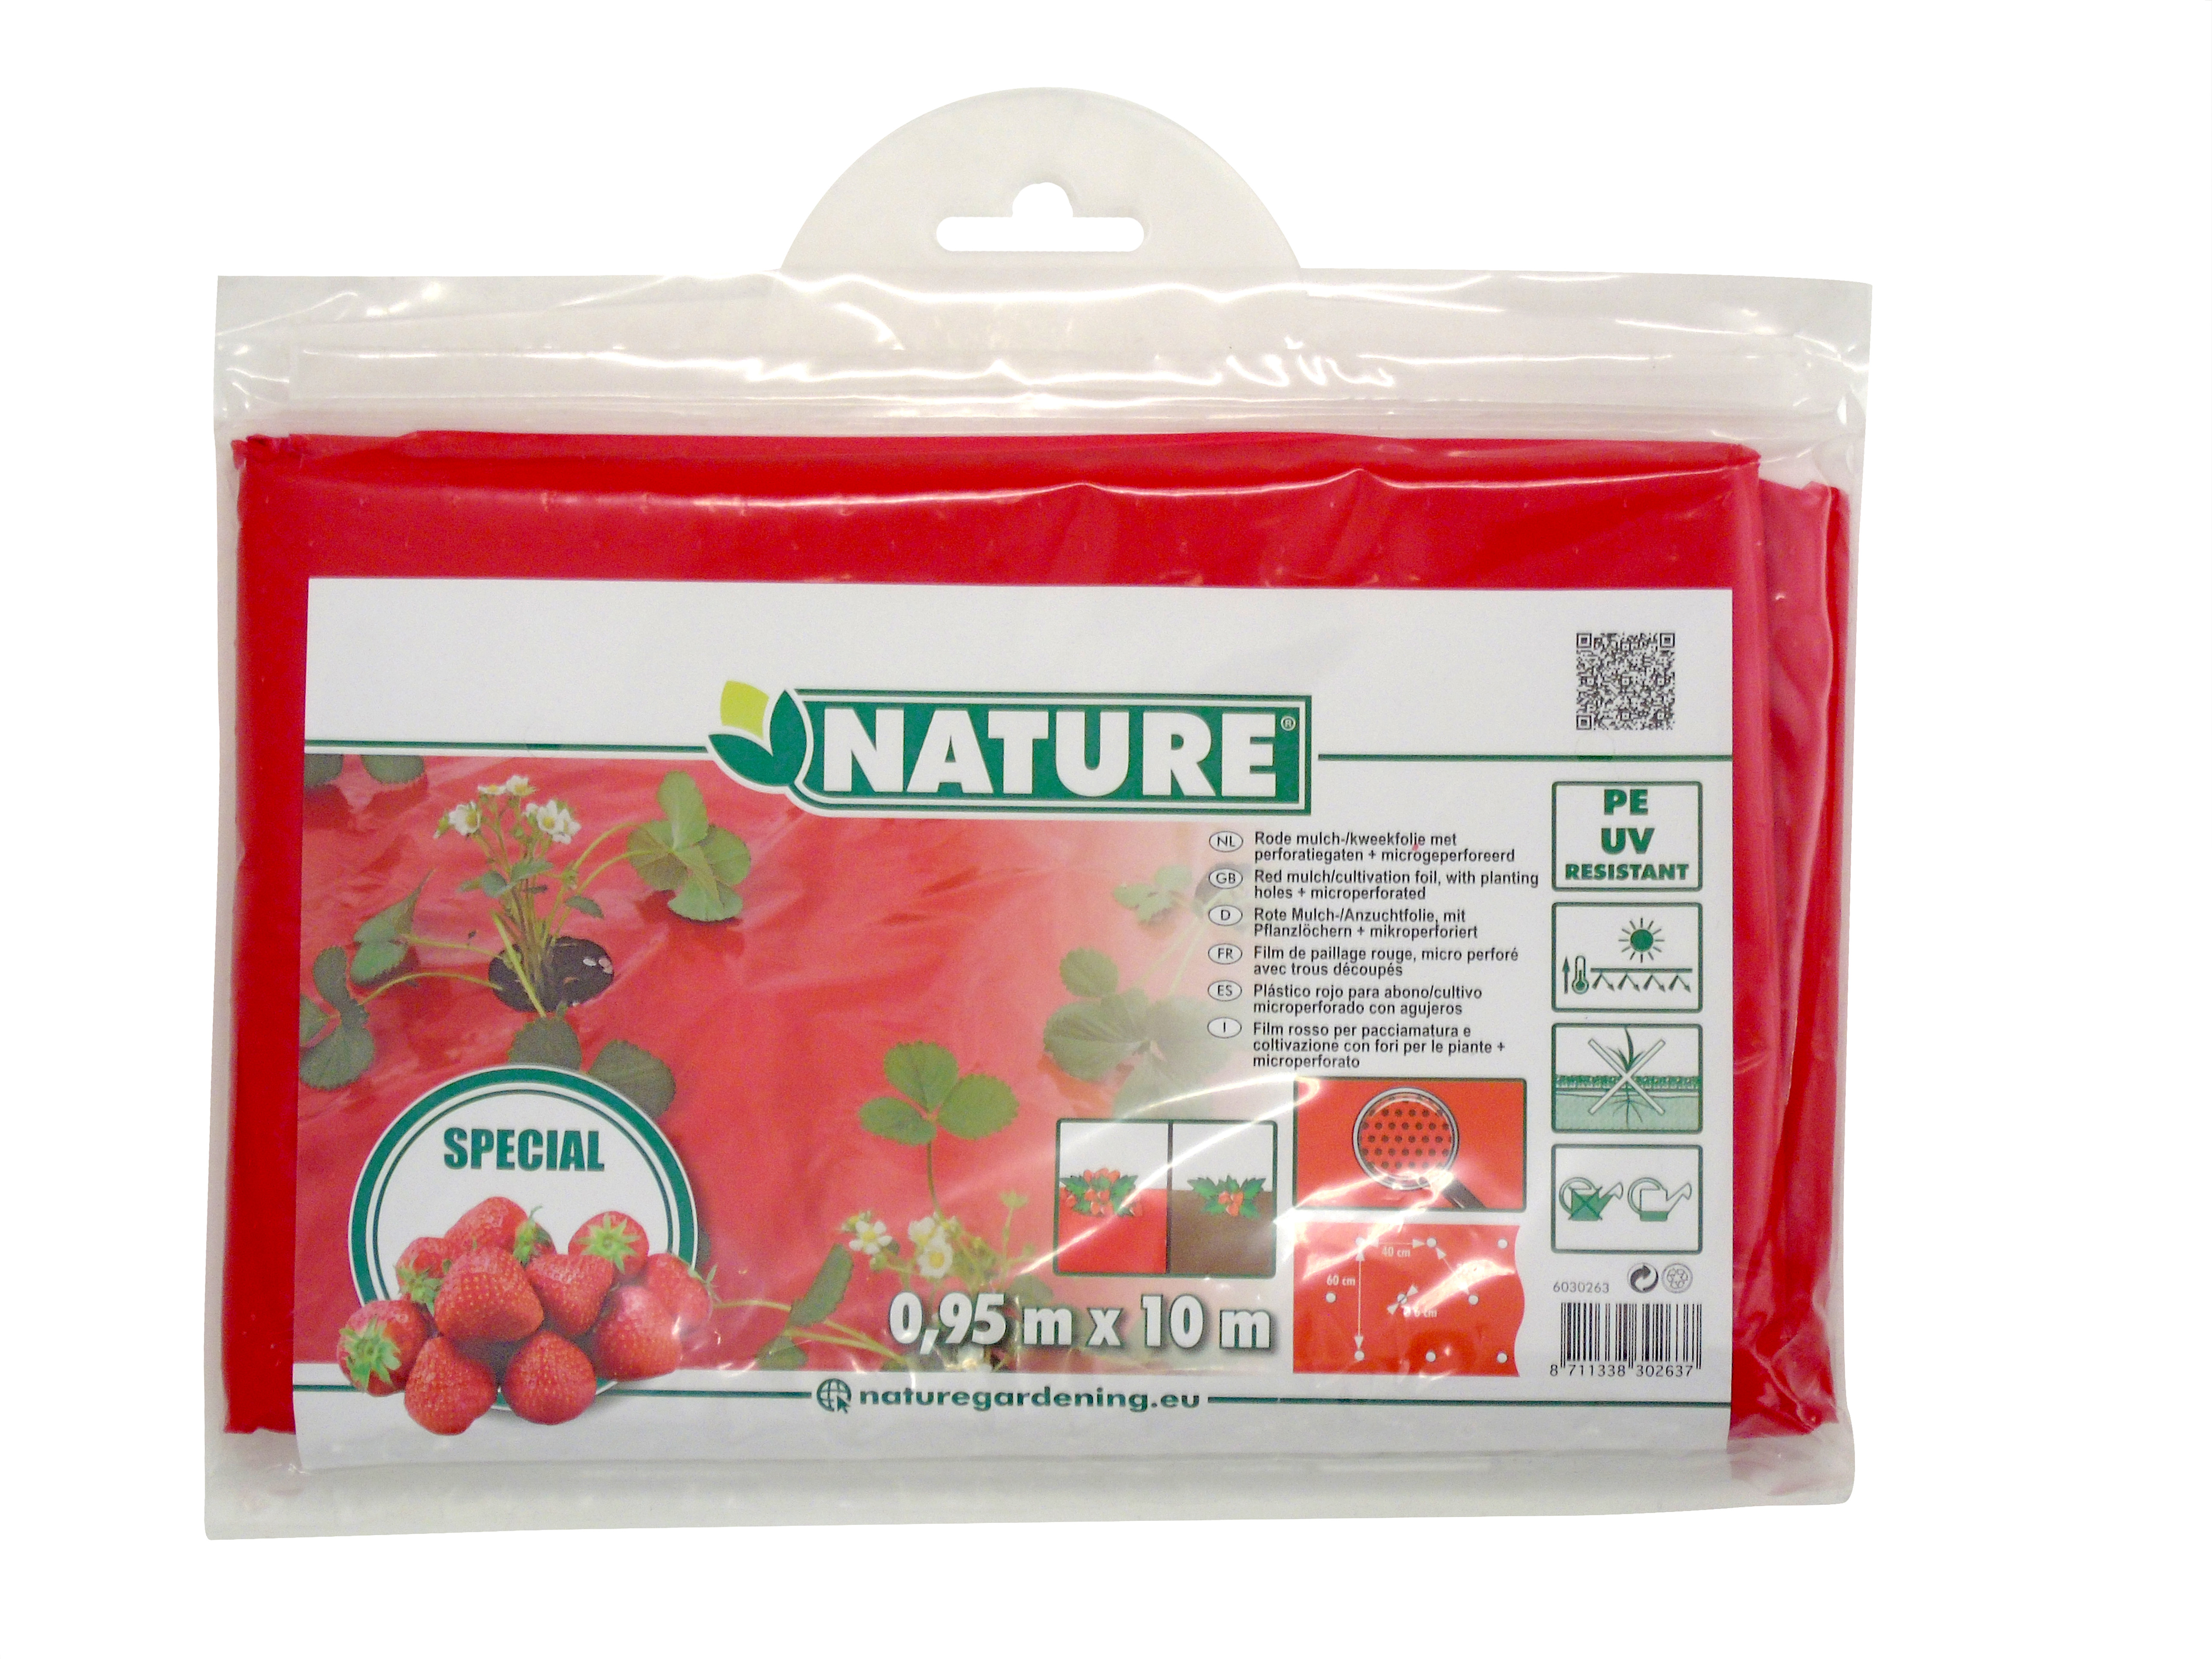 Folie de acoperire pentru căpșuni roșu! 25 micron80x60mm,0,95x10m, cu găuri de plantare